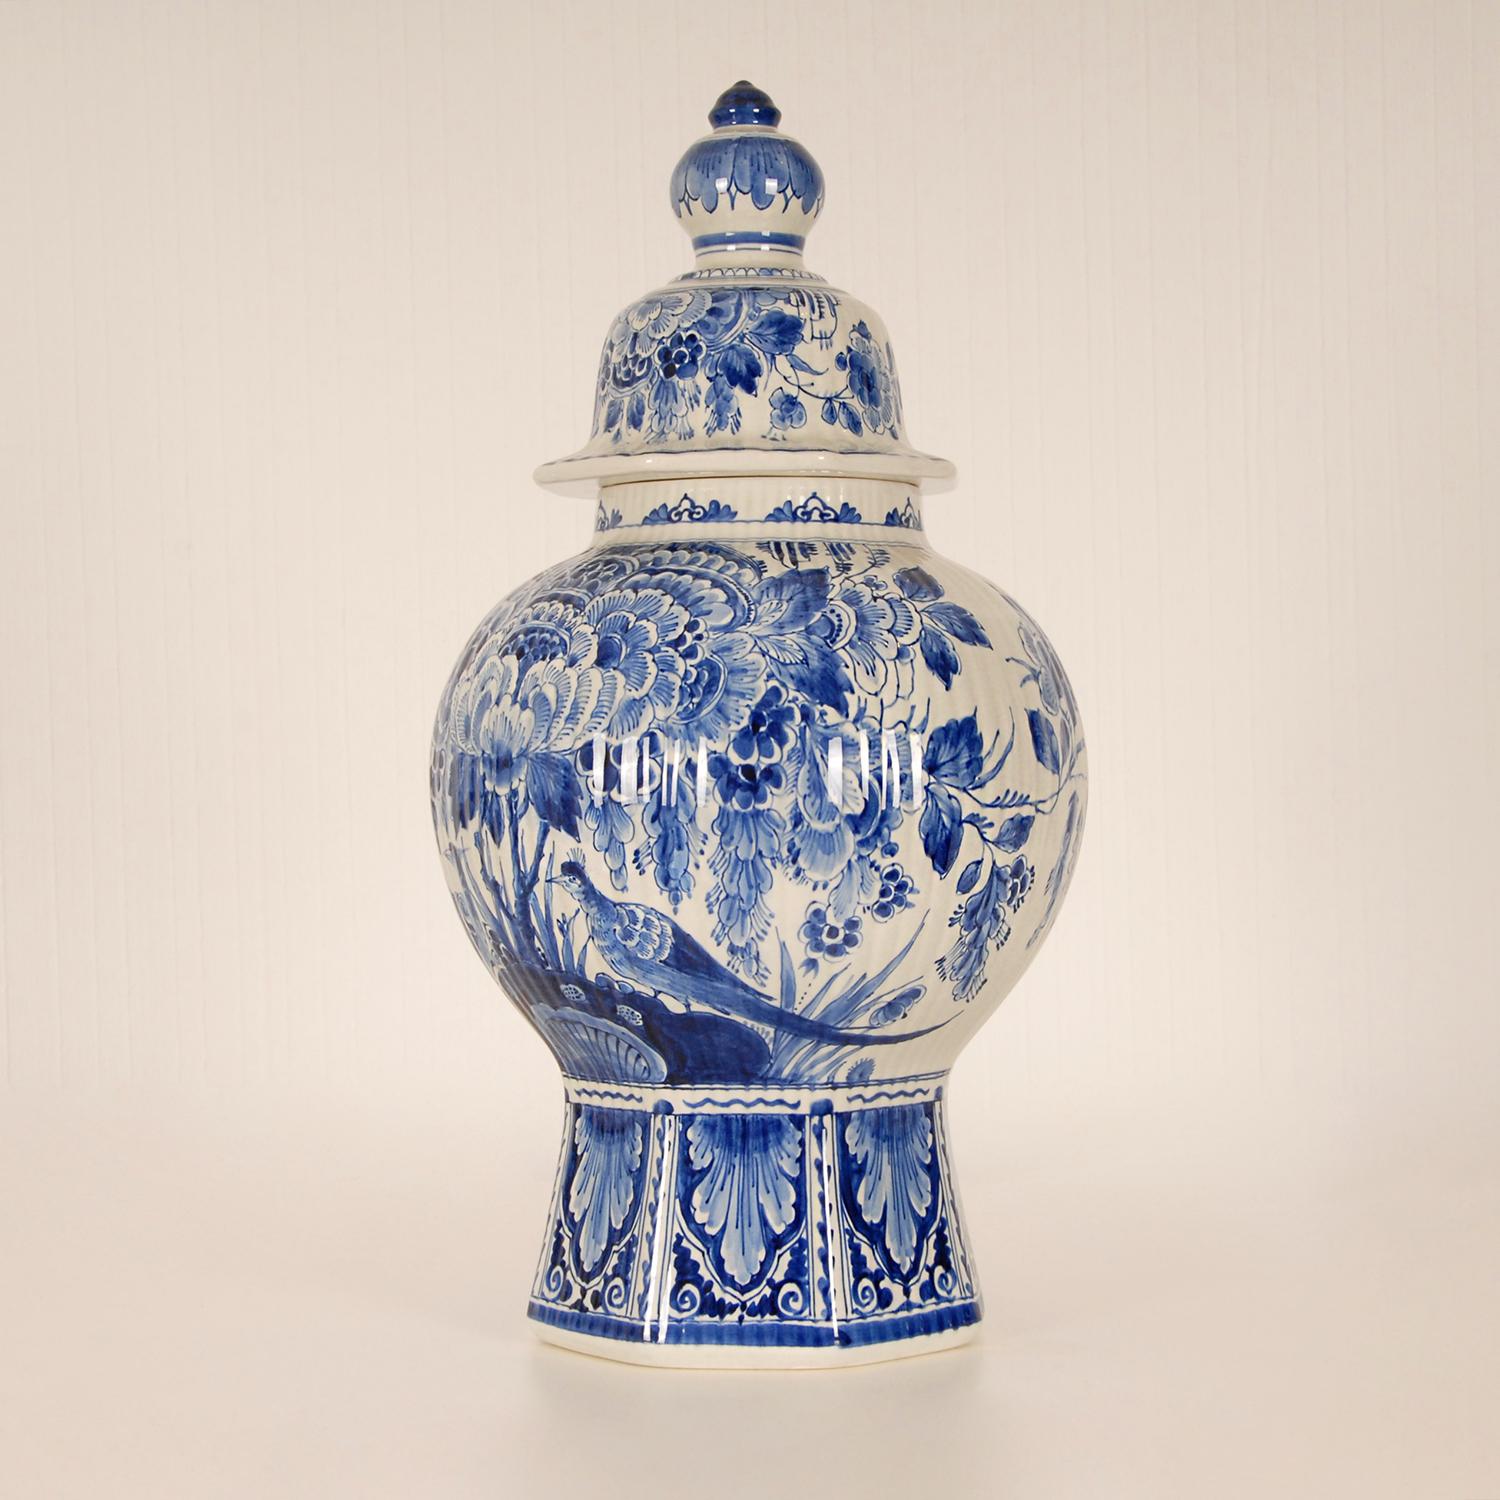 Baroque Revival Royal Delft Covered Baluster Vase Earthenware Blue & White Vase Urn